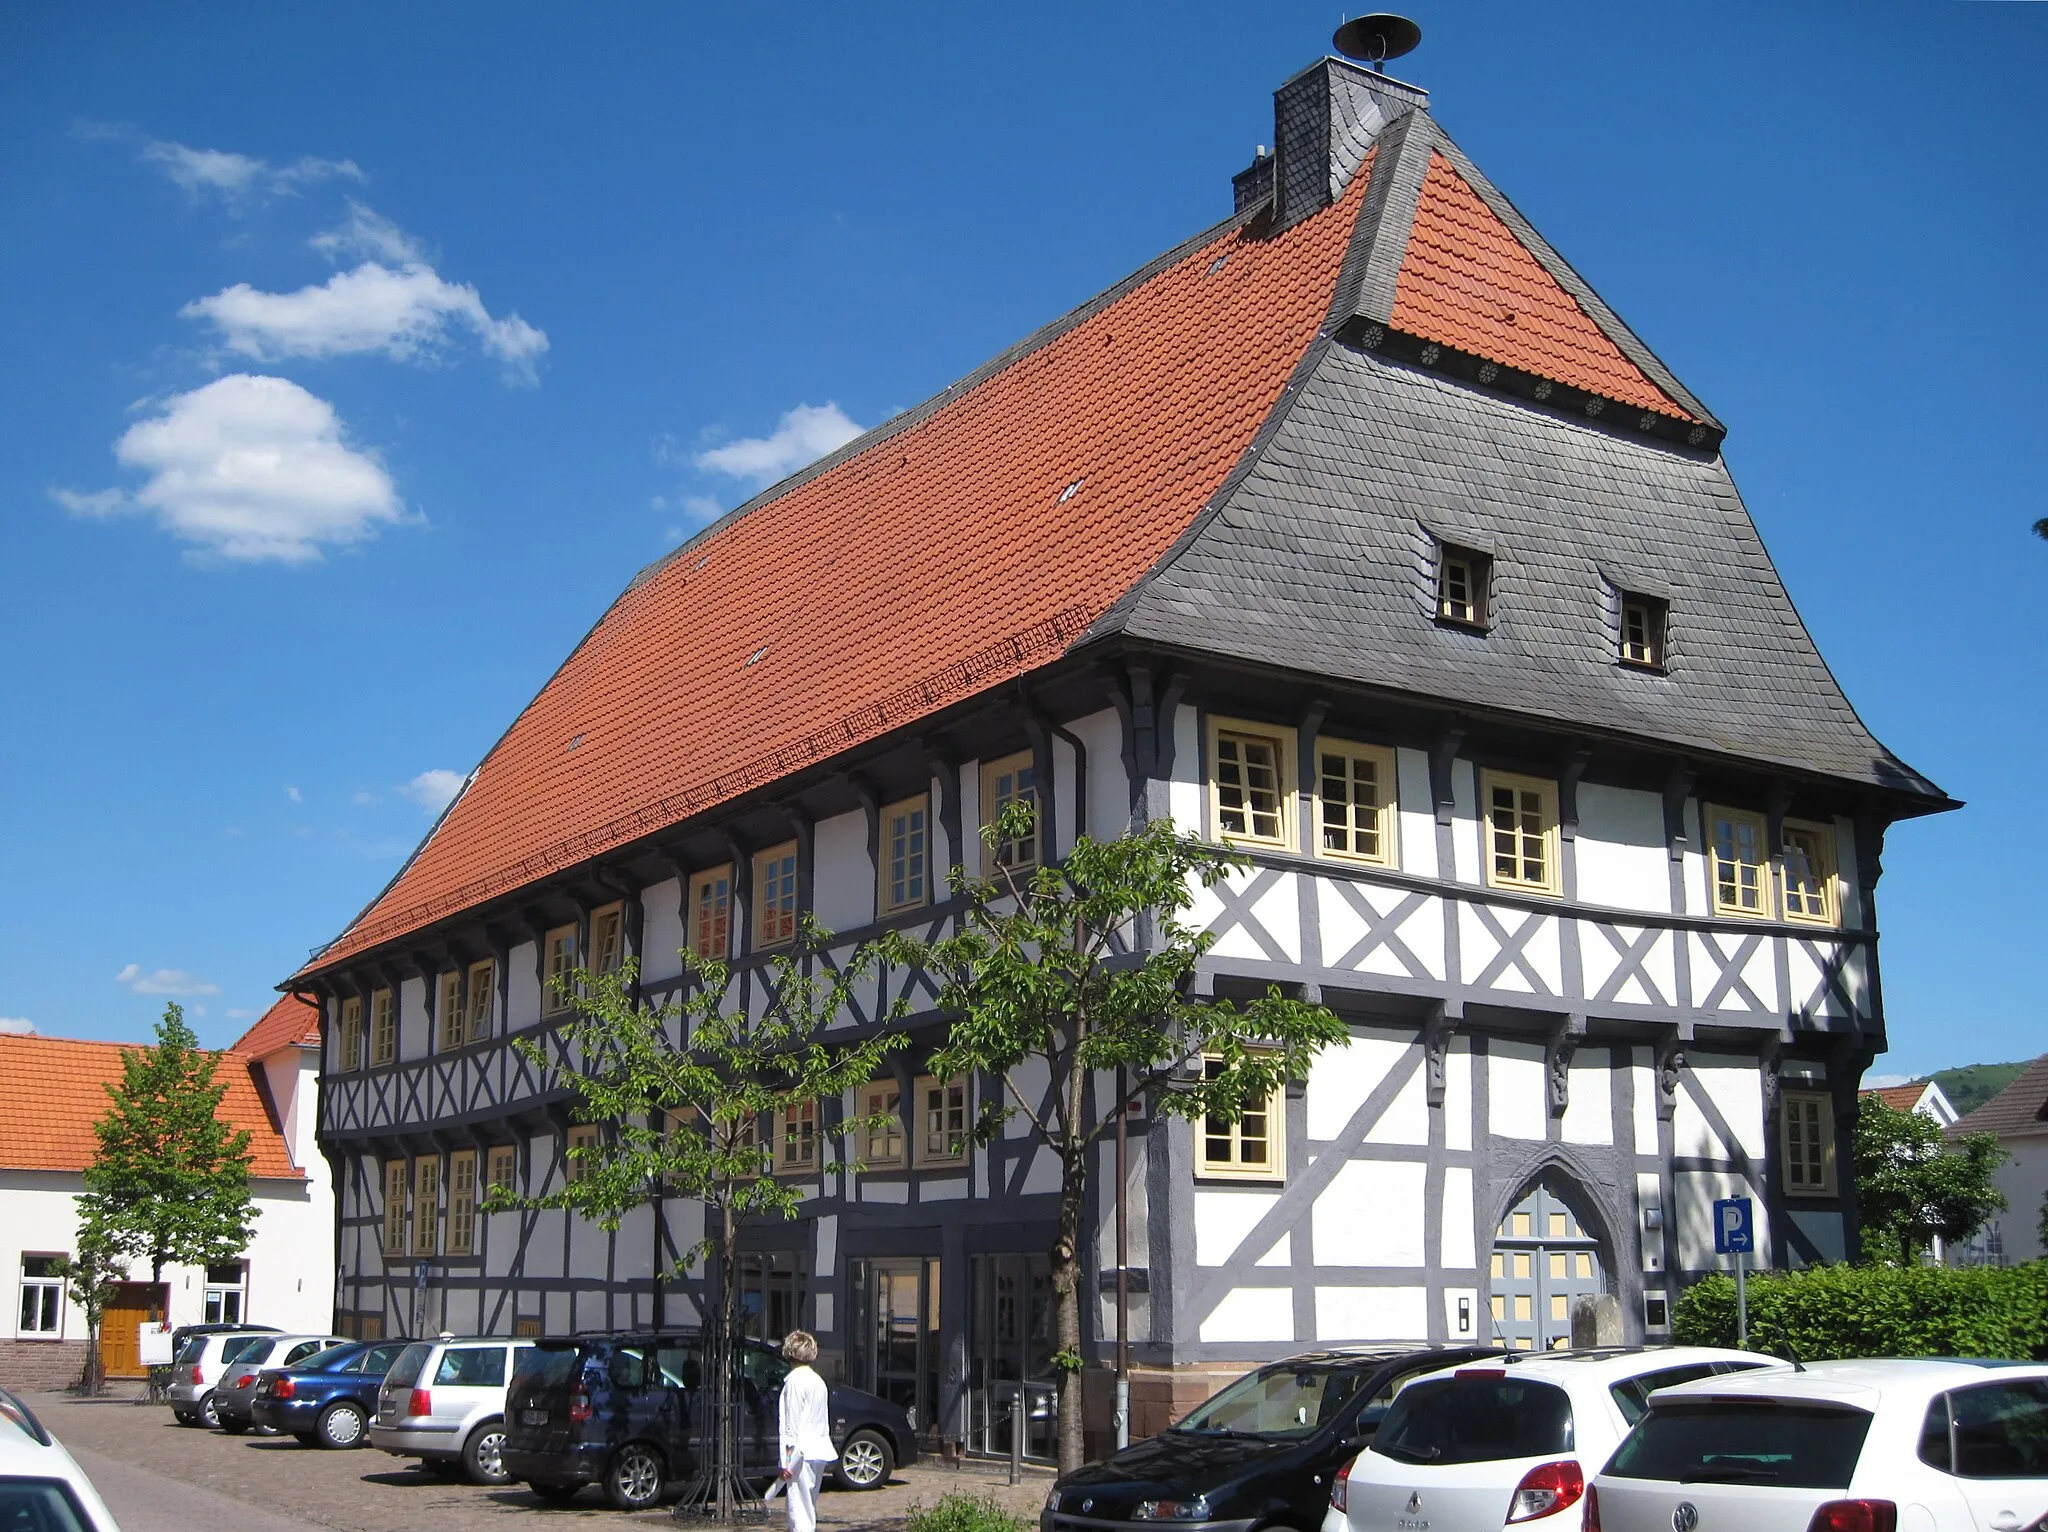 Photo showing: Denkmalgeschütztes Rathaus in Zierenberg. Gotisierender Fachwerkbau. Ältestes erhaltenes Fachwerkhaus Hessens. Erbaut 1450 durch Henrich Brant.